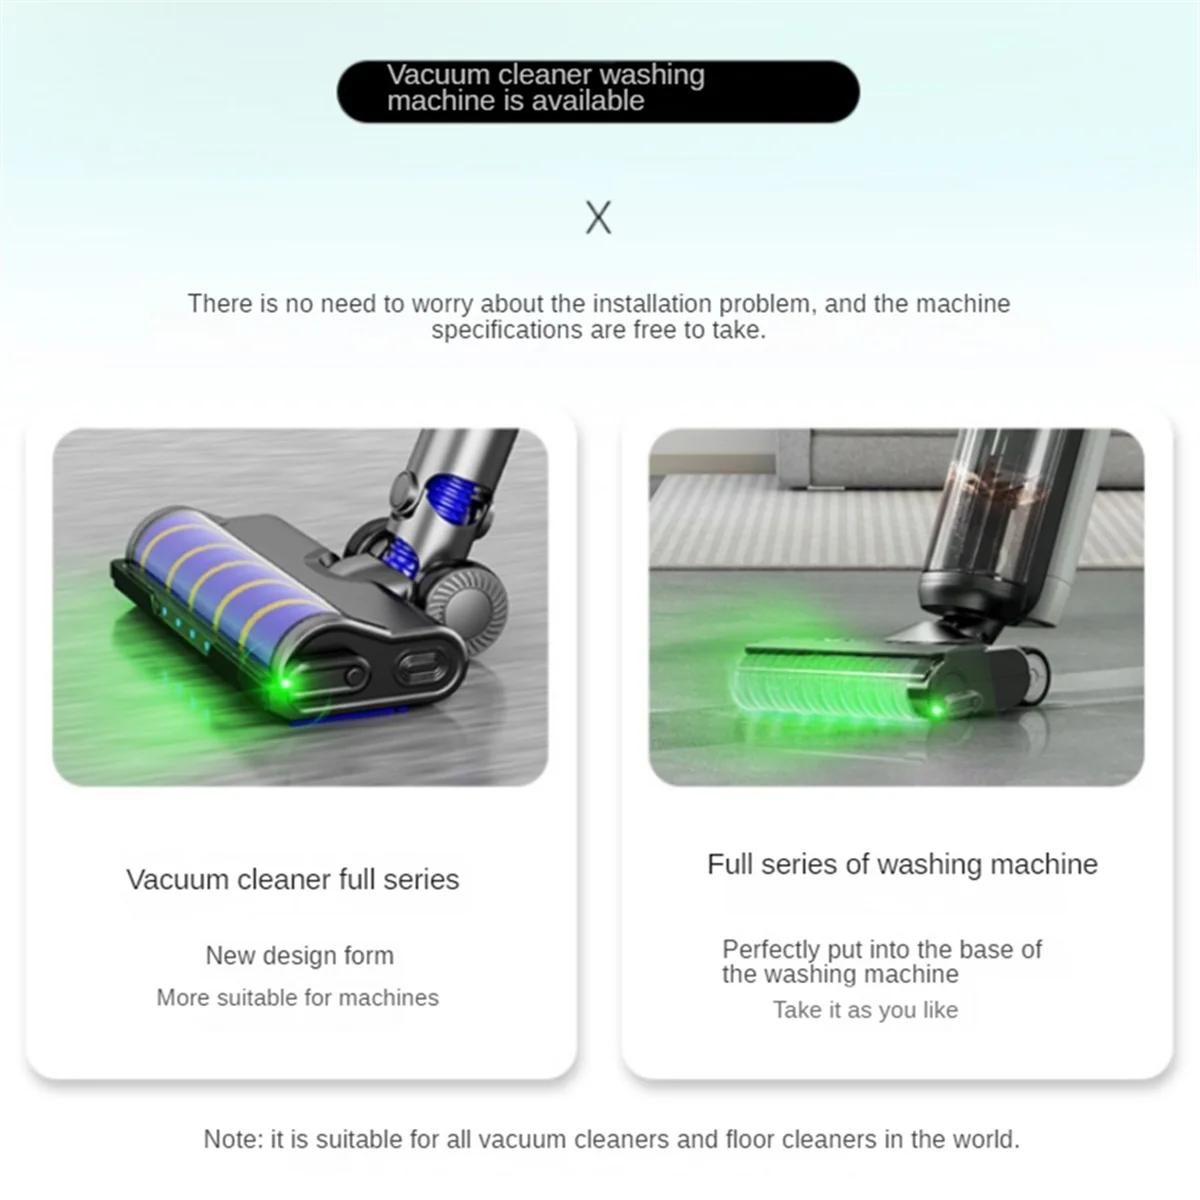 Vacuum čistič prach displej LED lampa, odhalit microscopic prach & osvětlit neviditelná zvířátko vlasy kocour pes kožich, USB nabíjení